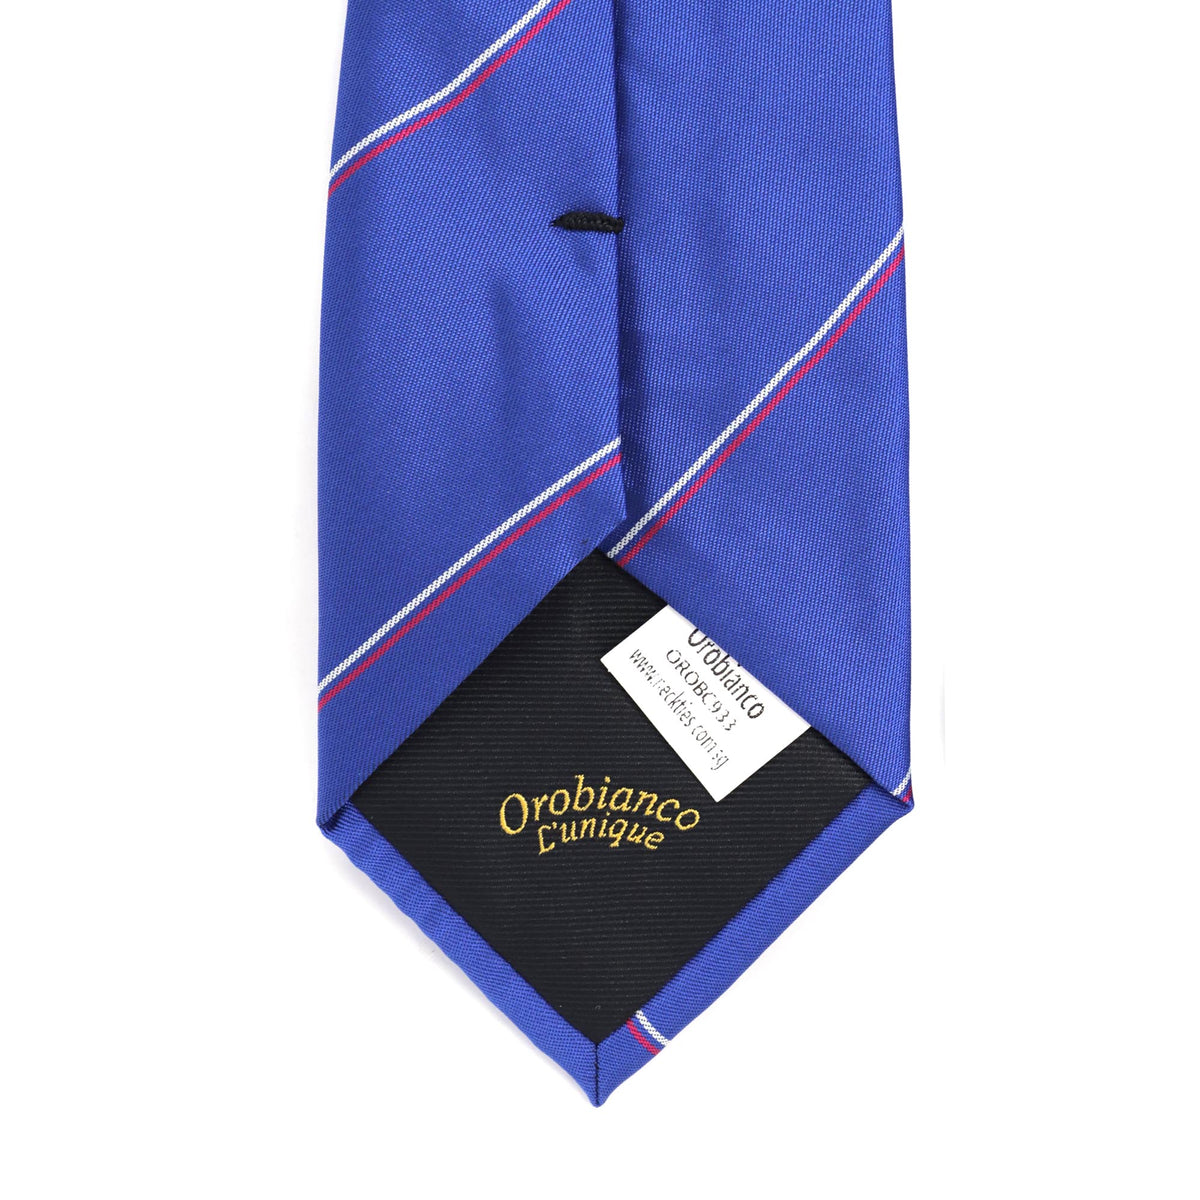 8厘米深蓝色真丝条纹图案领带